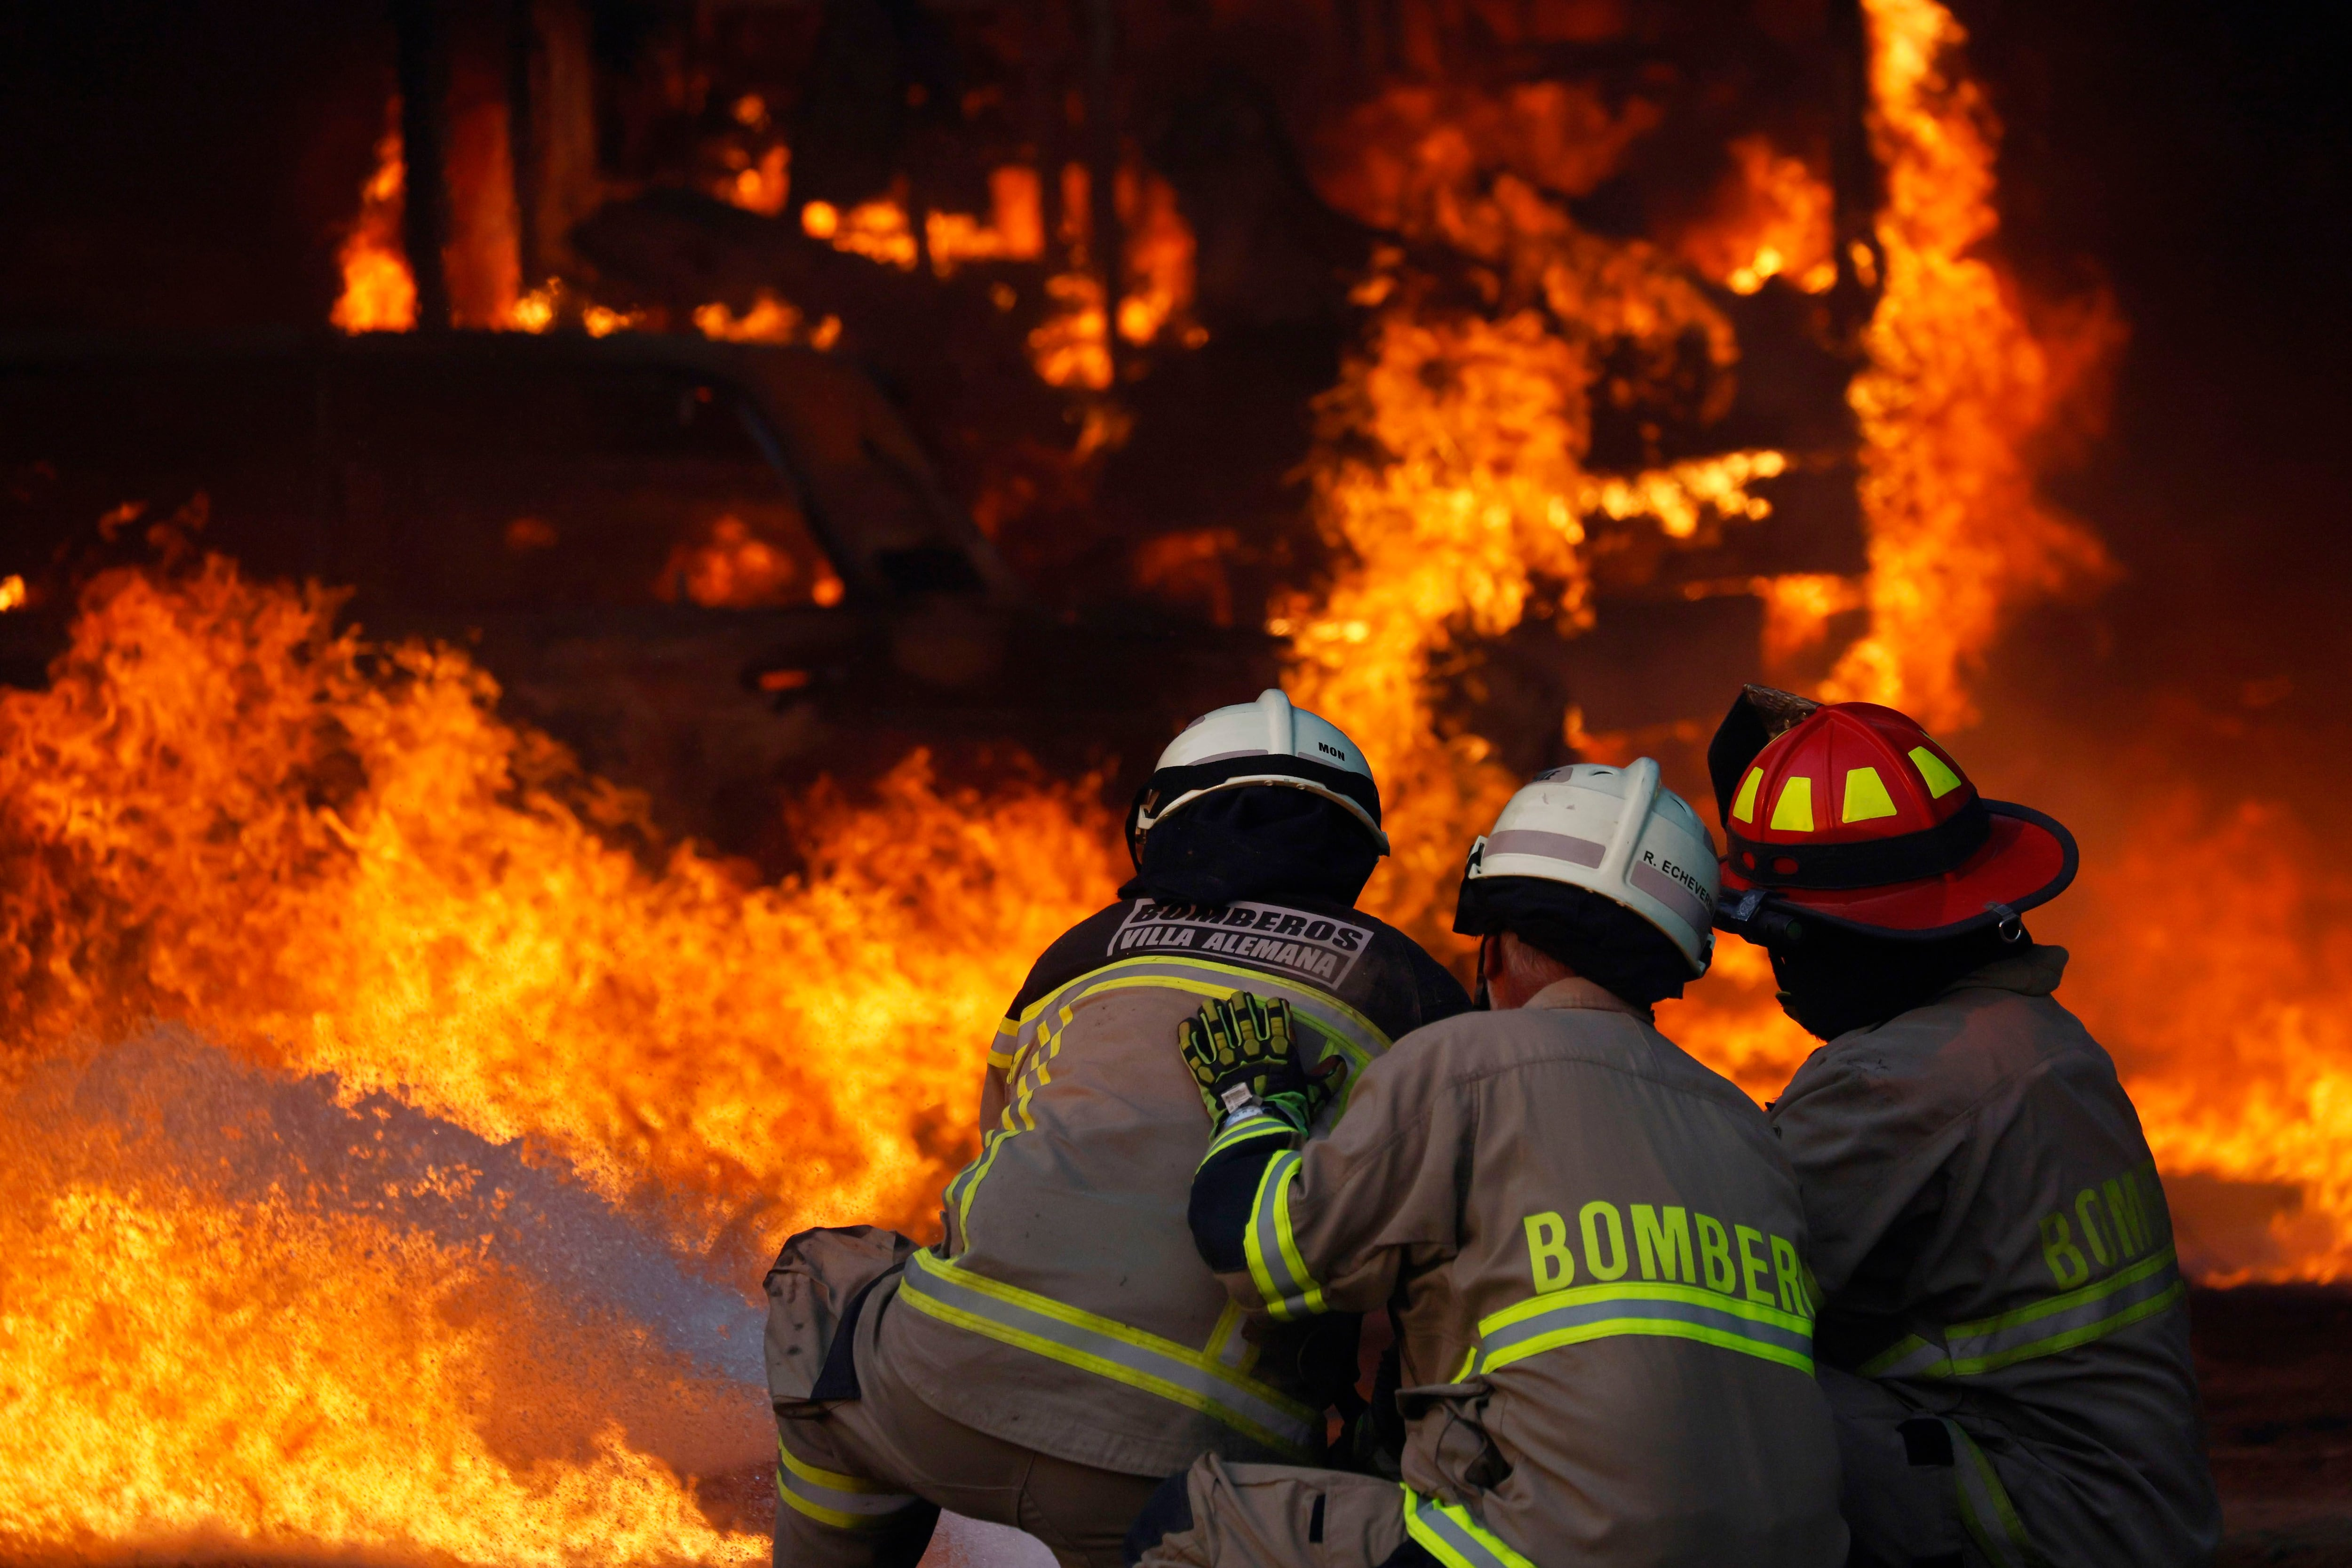 
                                 Dictan prisión preventiva para bombero y exbrigadista por causar incendio que dejó 137 muertos en Valparaíso 
                            